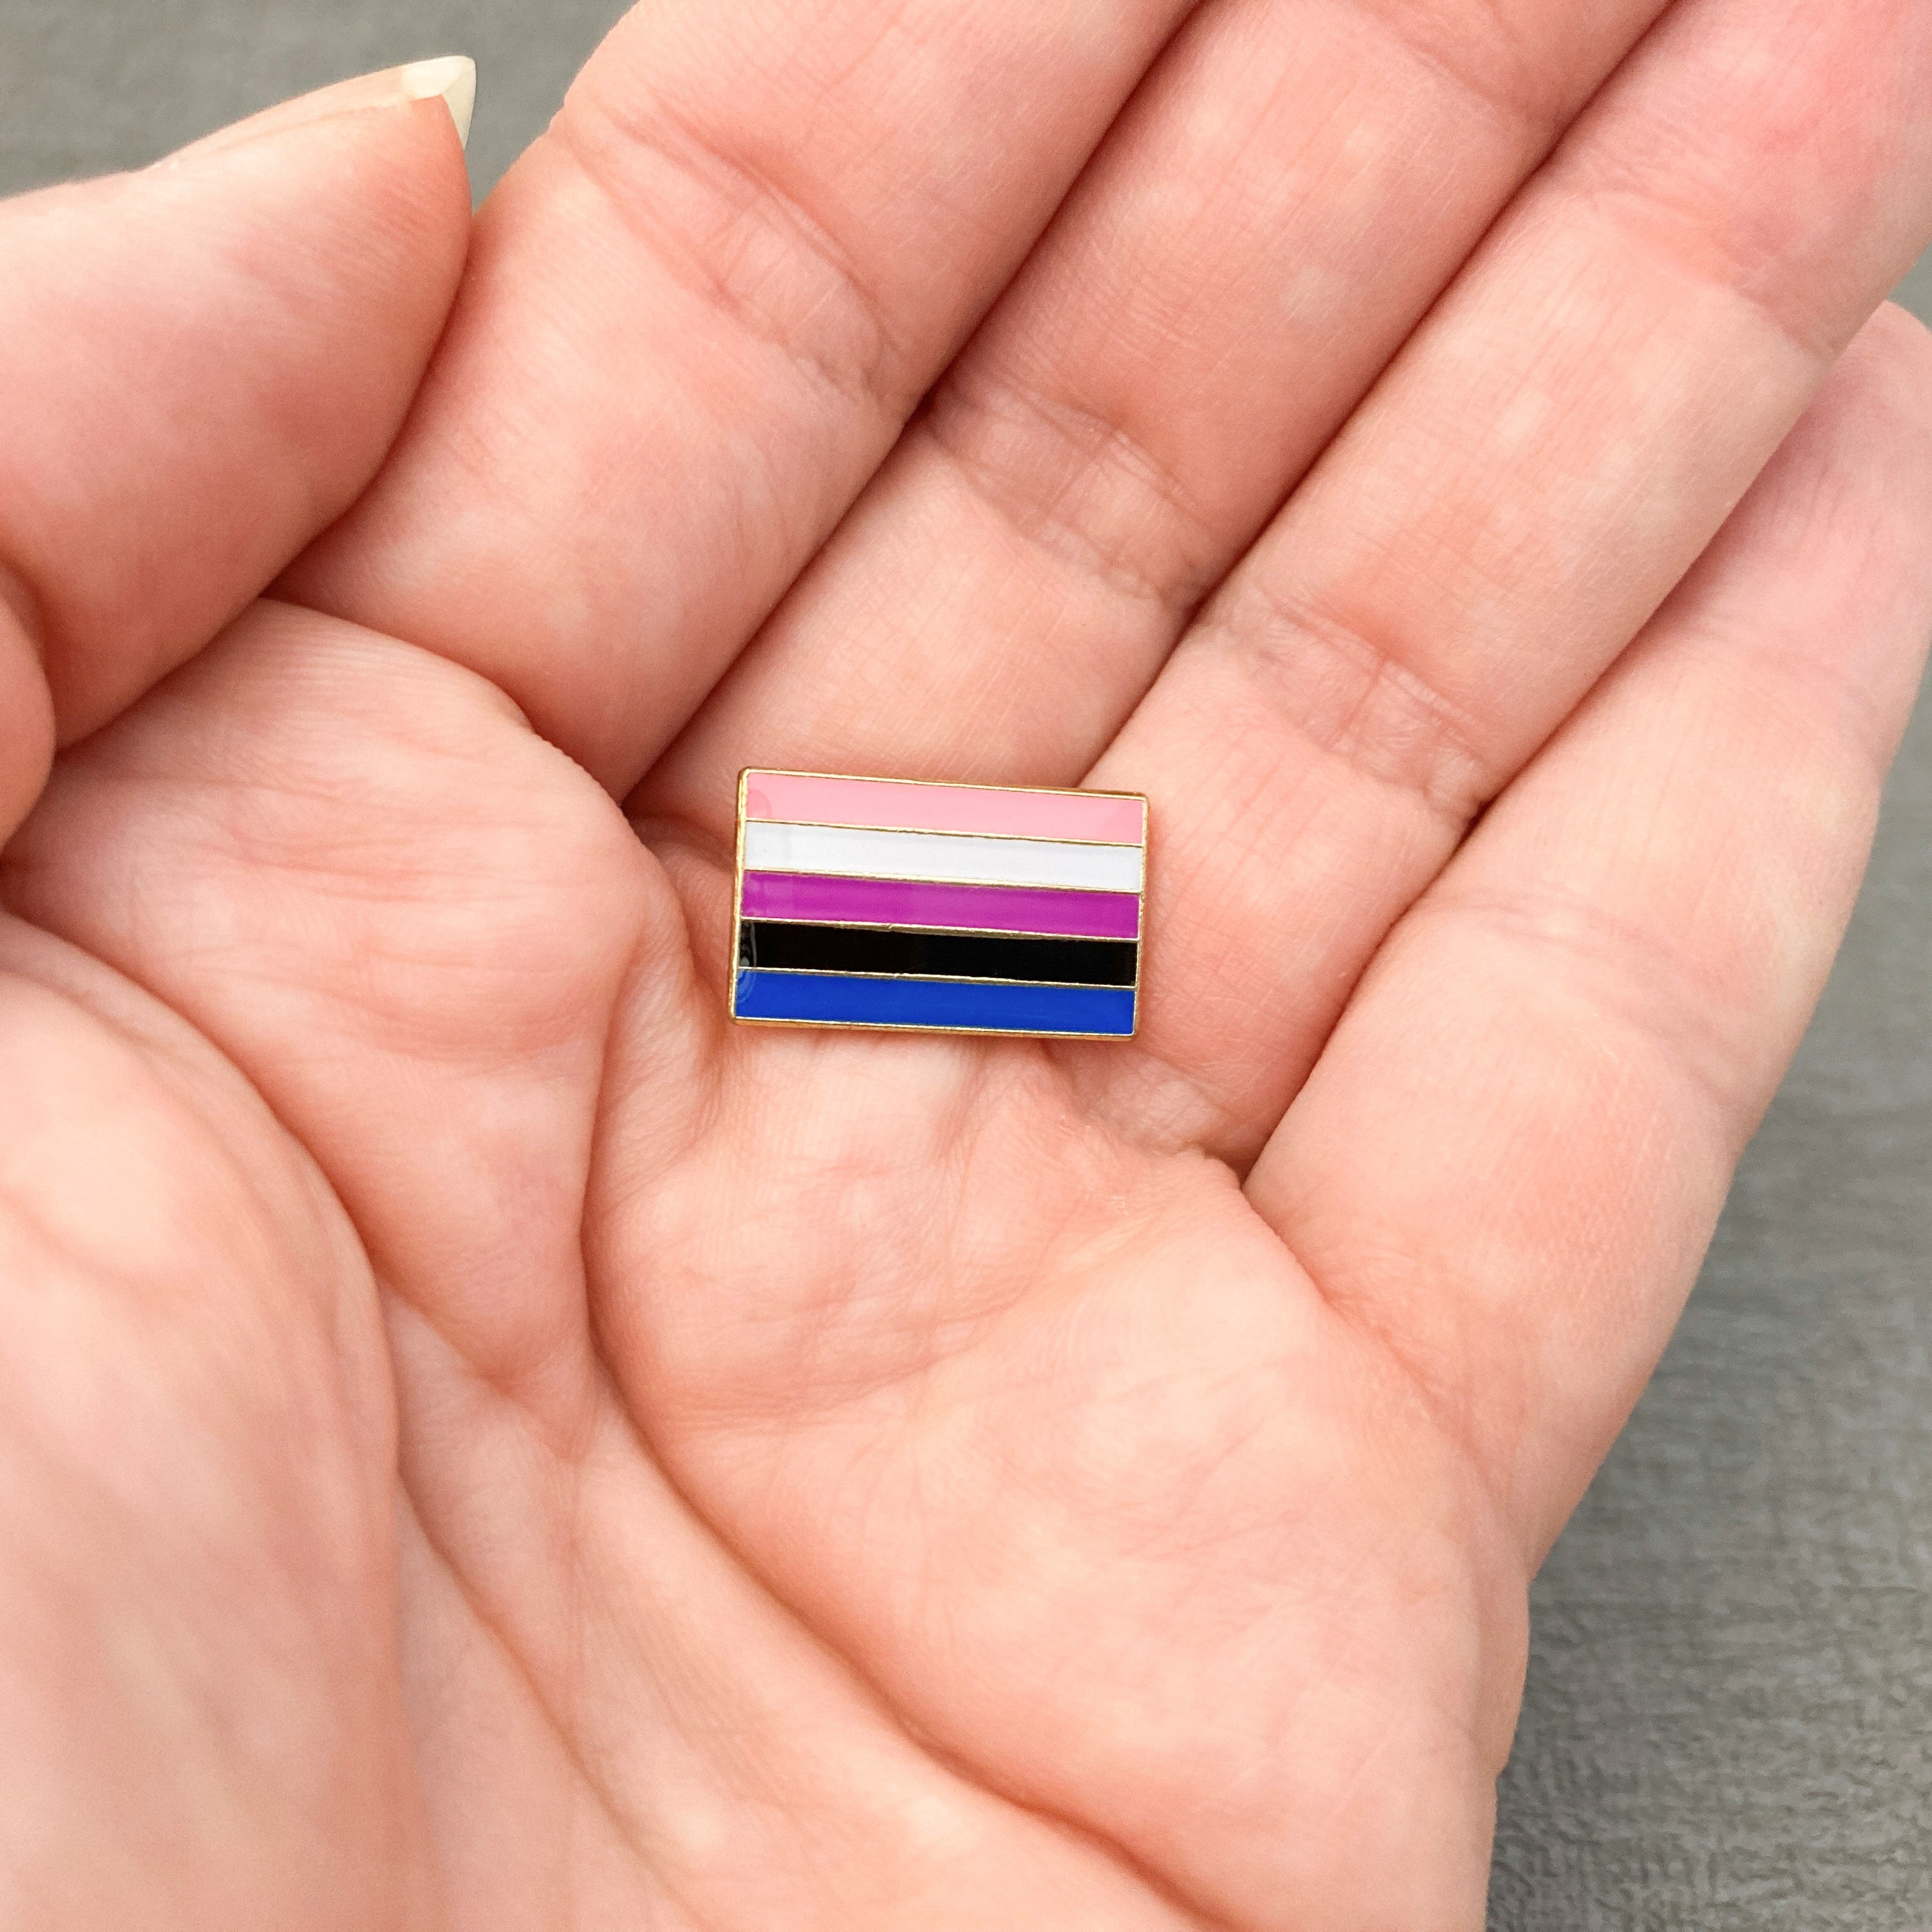 lgbt pride flag pins genderfluid gift